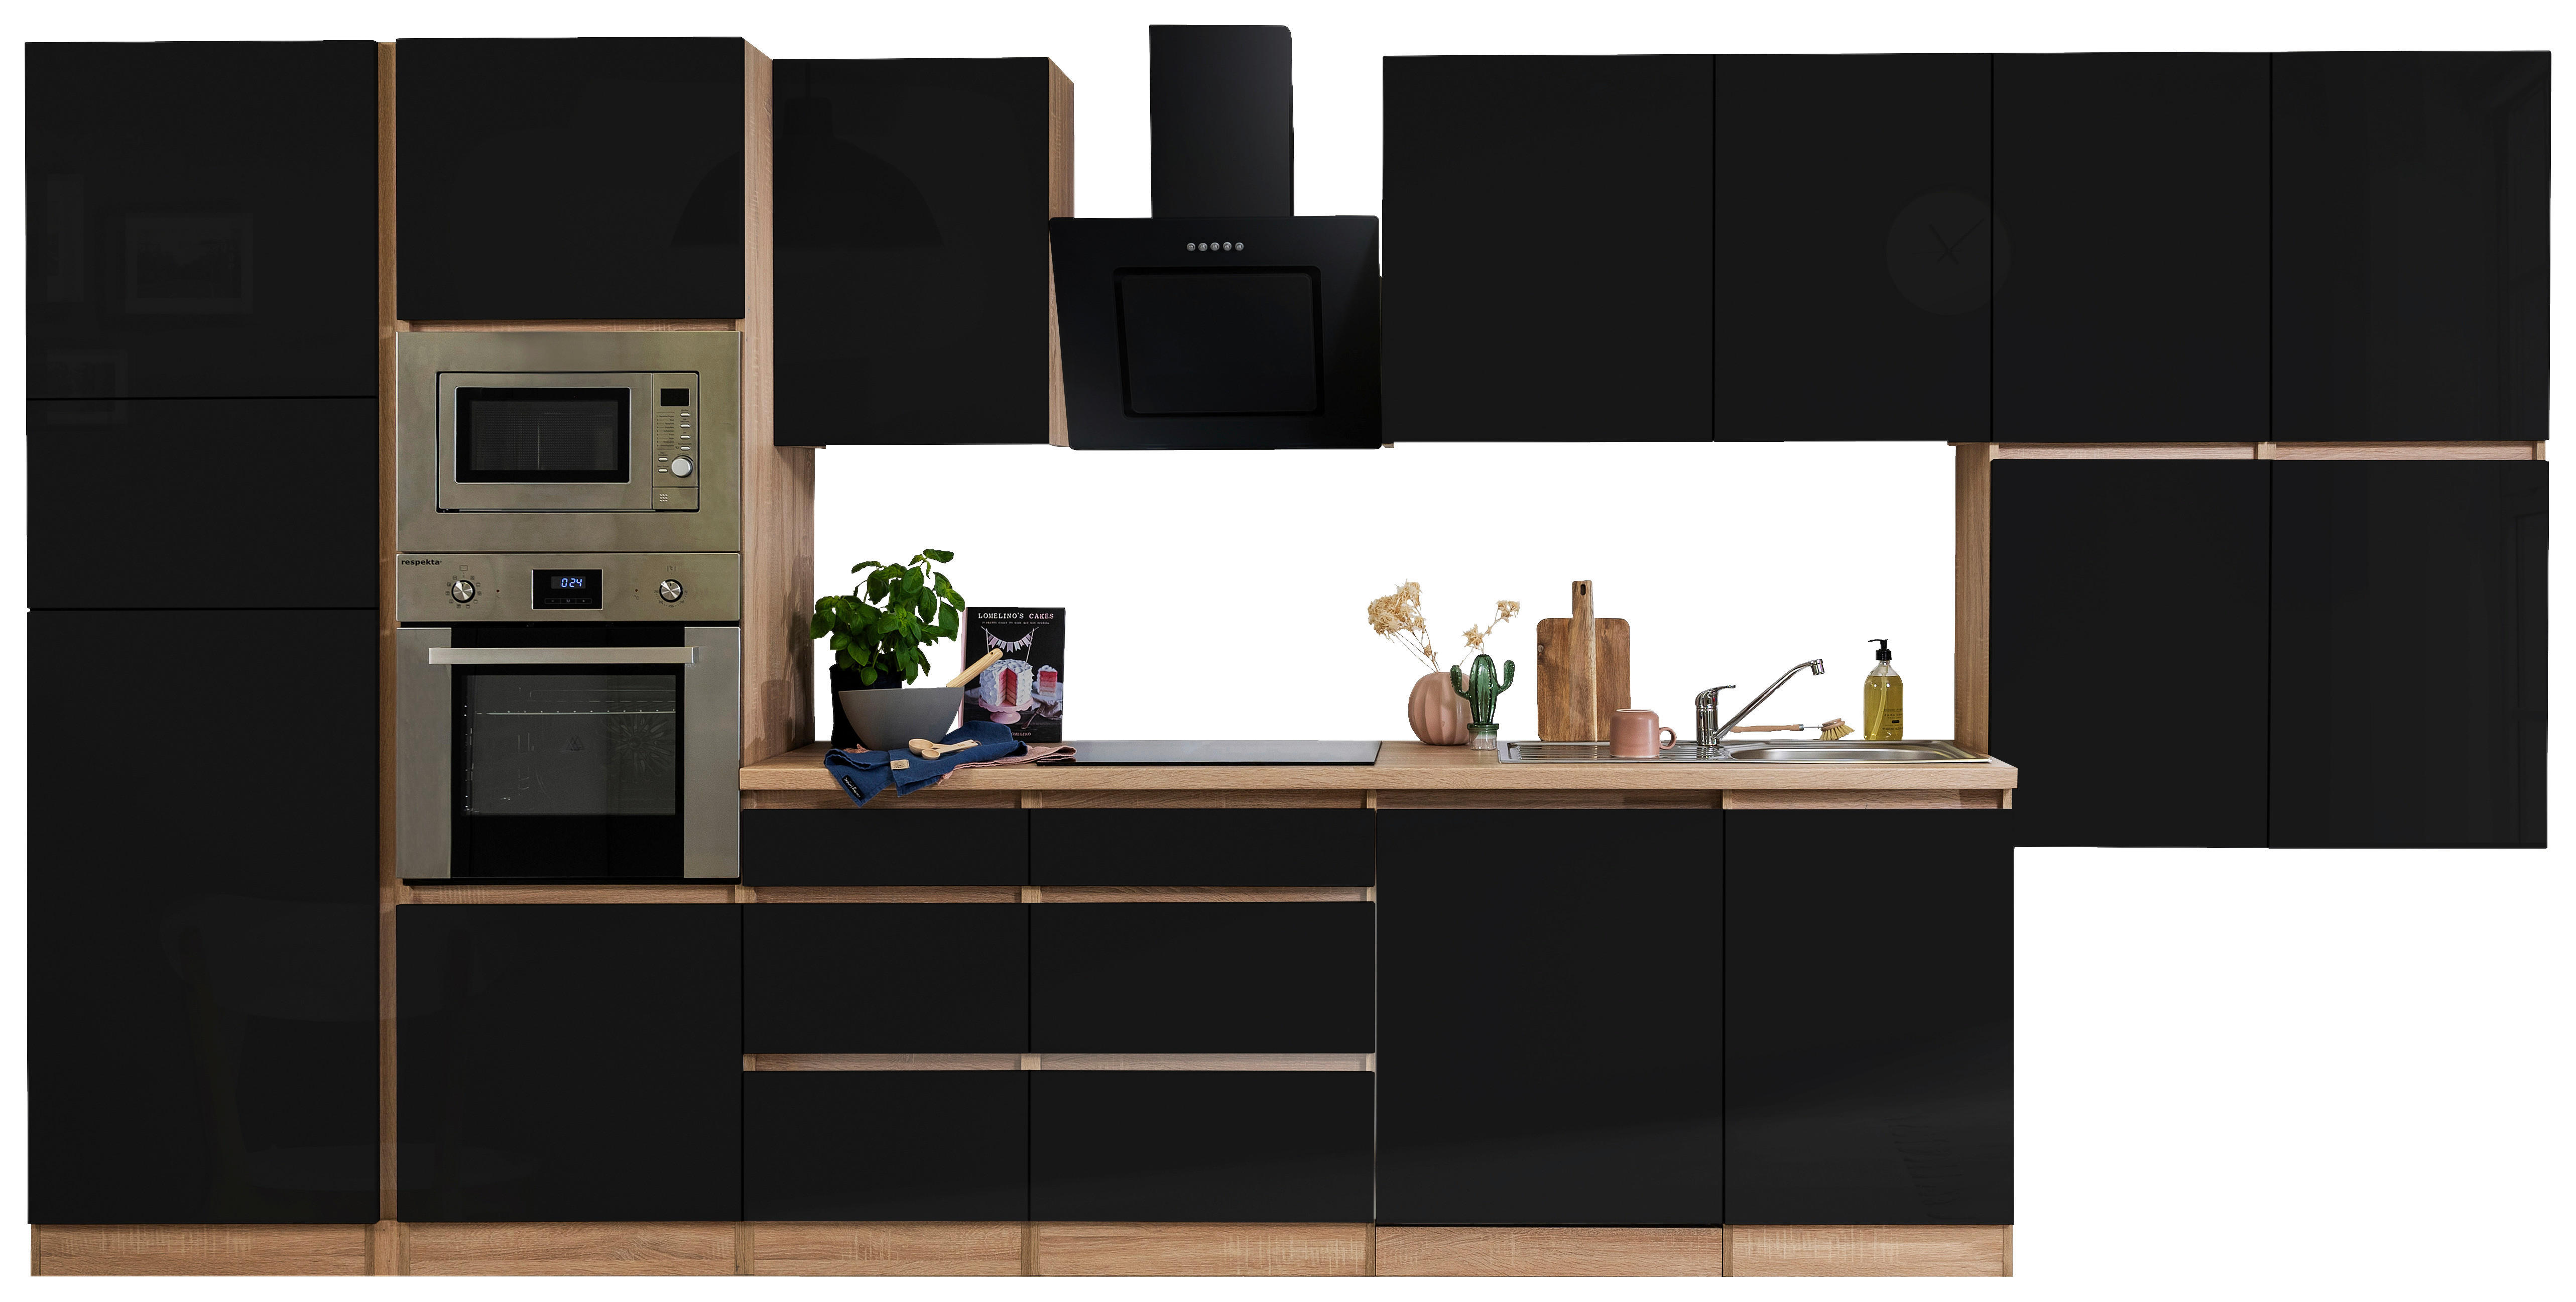 Respekta Küchenblock Premium schwarz hochglänzend B/H/T: ca. 445x220,5x60 cm Premium - Eiche/schwarz (445,00/220,50/60,00cm)